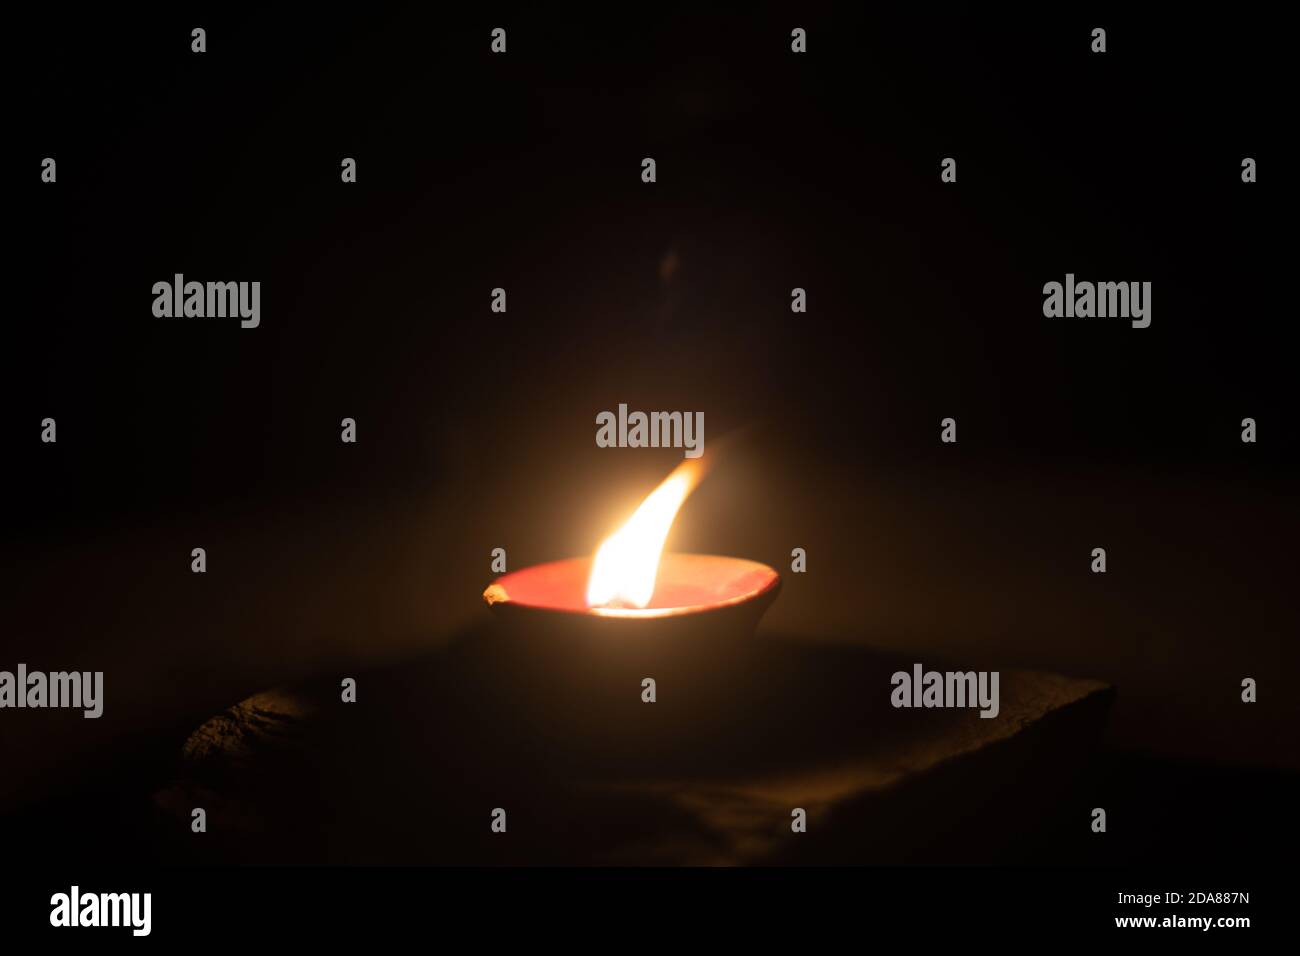 Dunkles minimalistisches Bild, das eine Diya-Öllampe mit Öl oder Ghee gefüllt zeigt und einen Baumwolldocht verbrennt, um eine Flamme zu erzeugen, ist ein beliebtes religiöses Objekt und Stockfoto